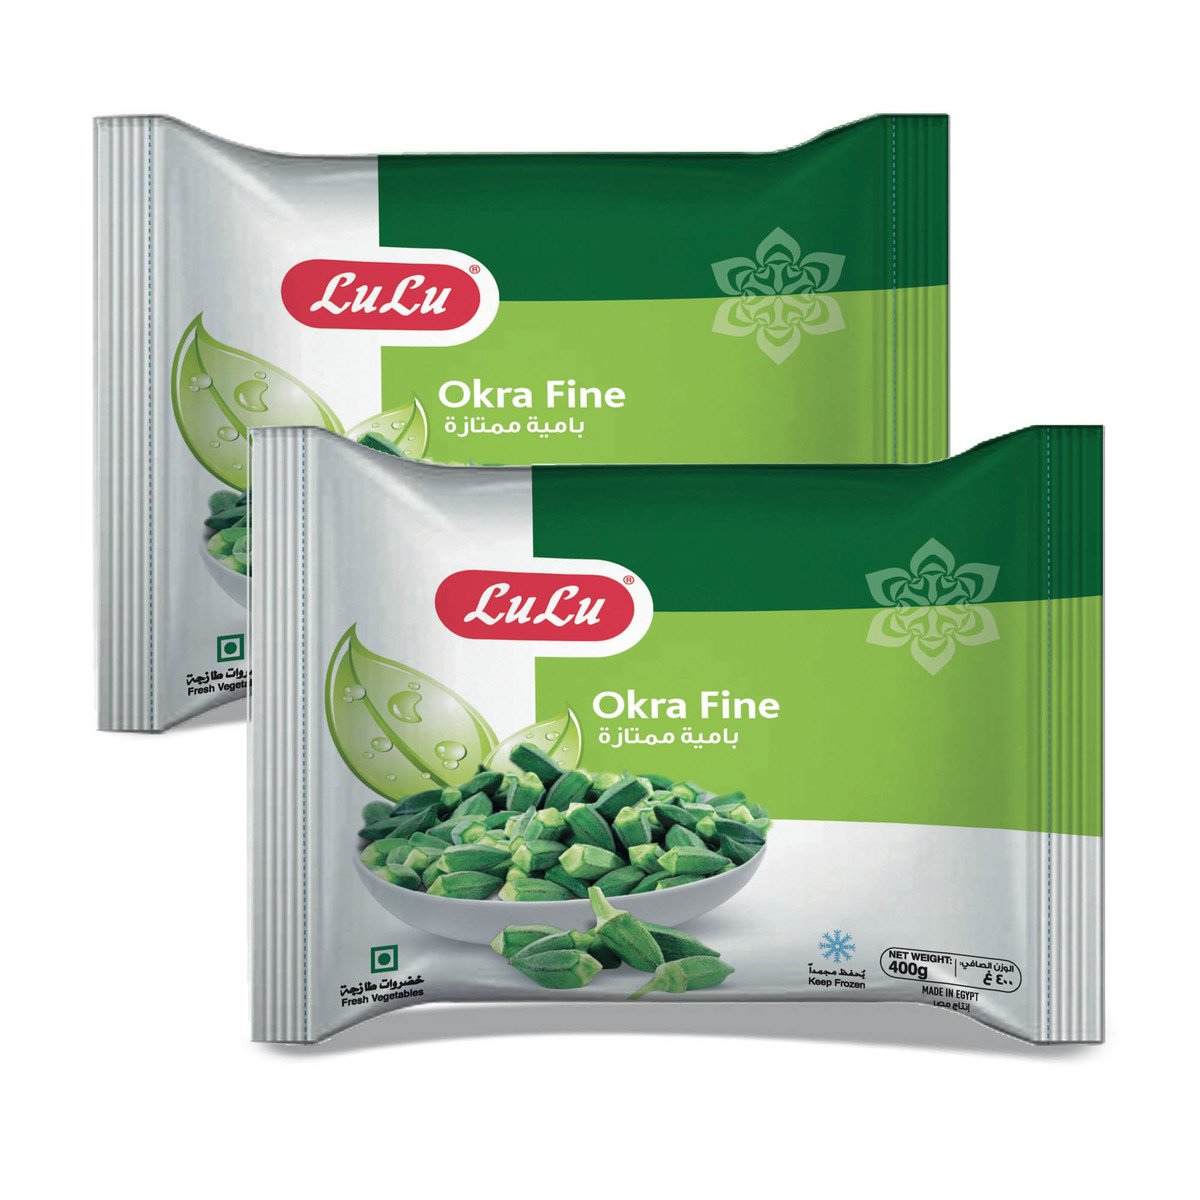 Buy LuLu Frozen Okra Fine Value Pack 2 x 400 g Online at Best Price | Okra | Lulu Egypt in Kuwait